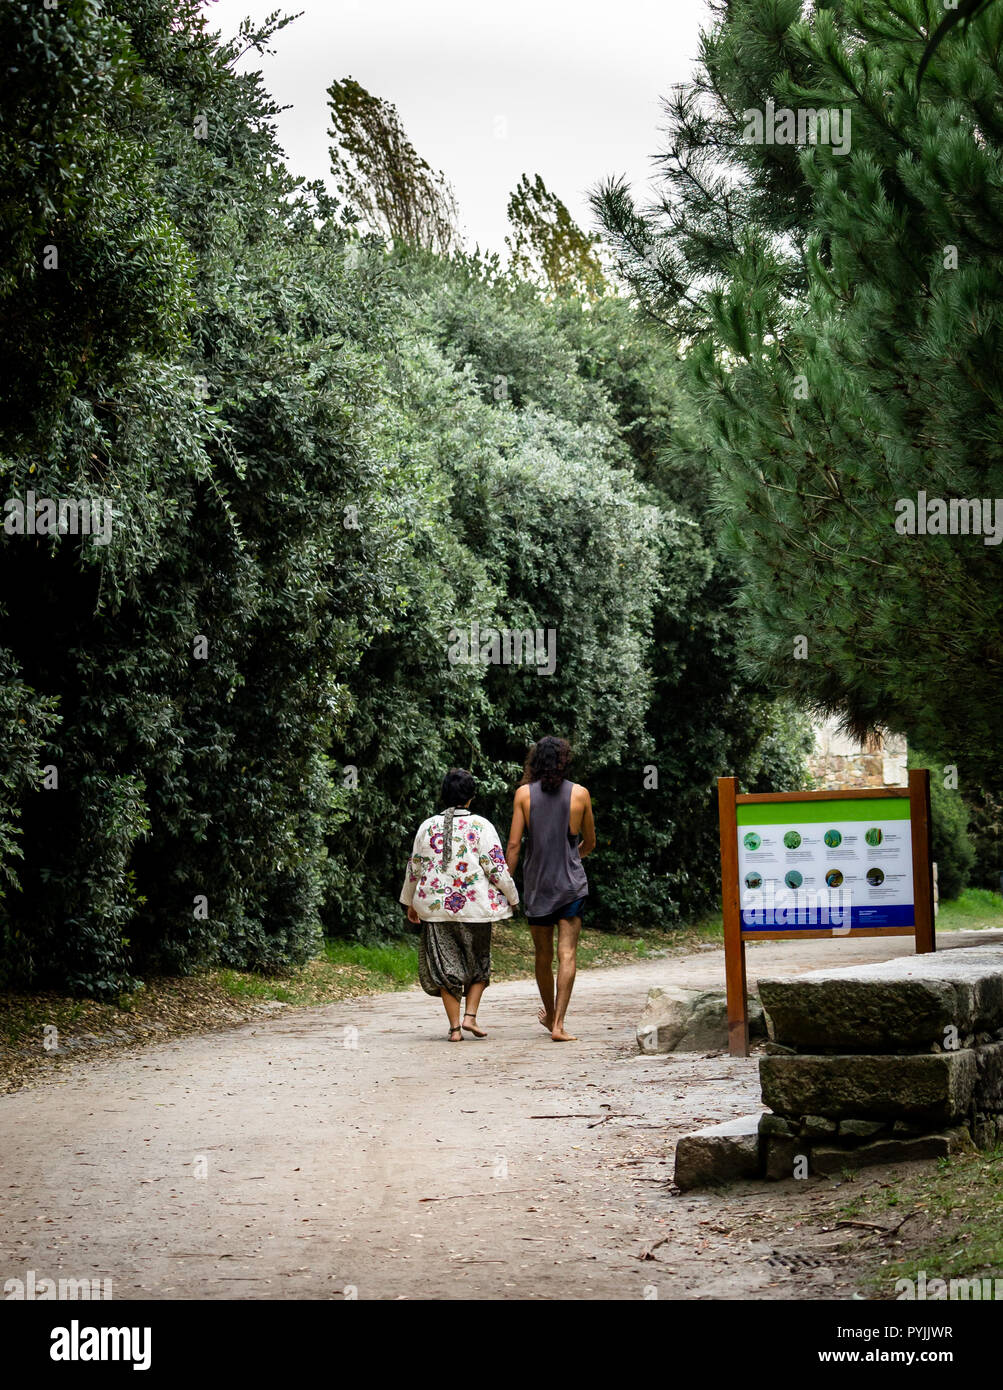 Vue arrière d'un couple hippie en passant devant un panneau dans un parc. Banque D'Images